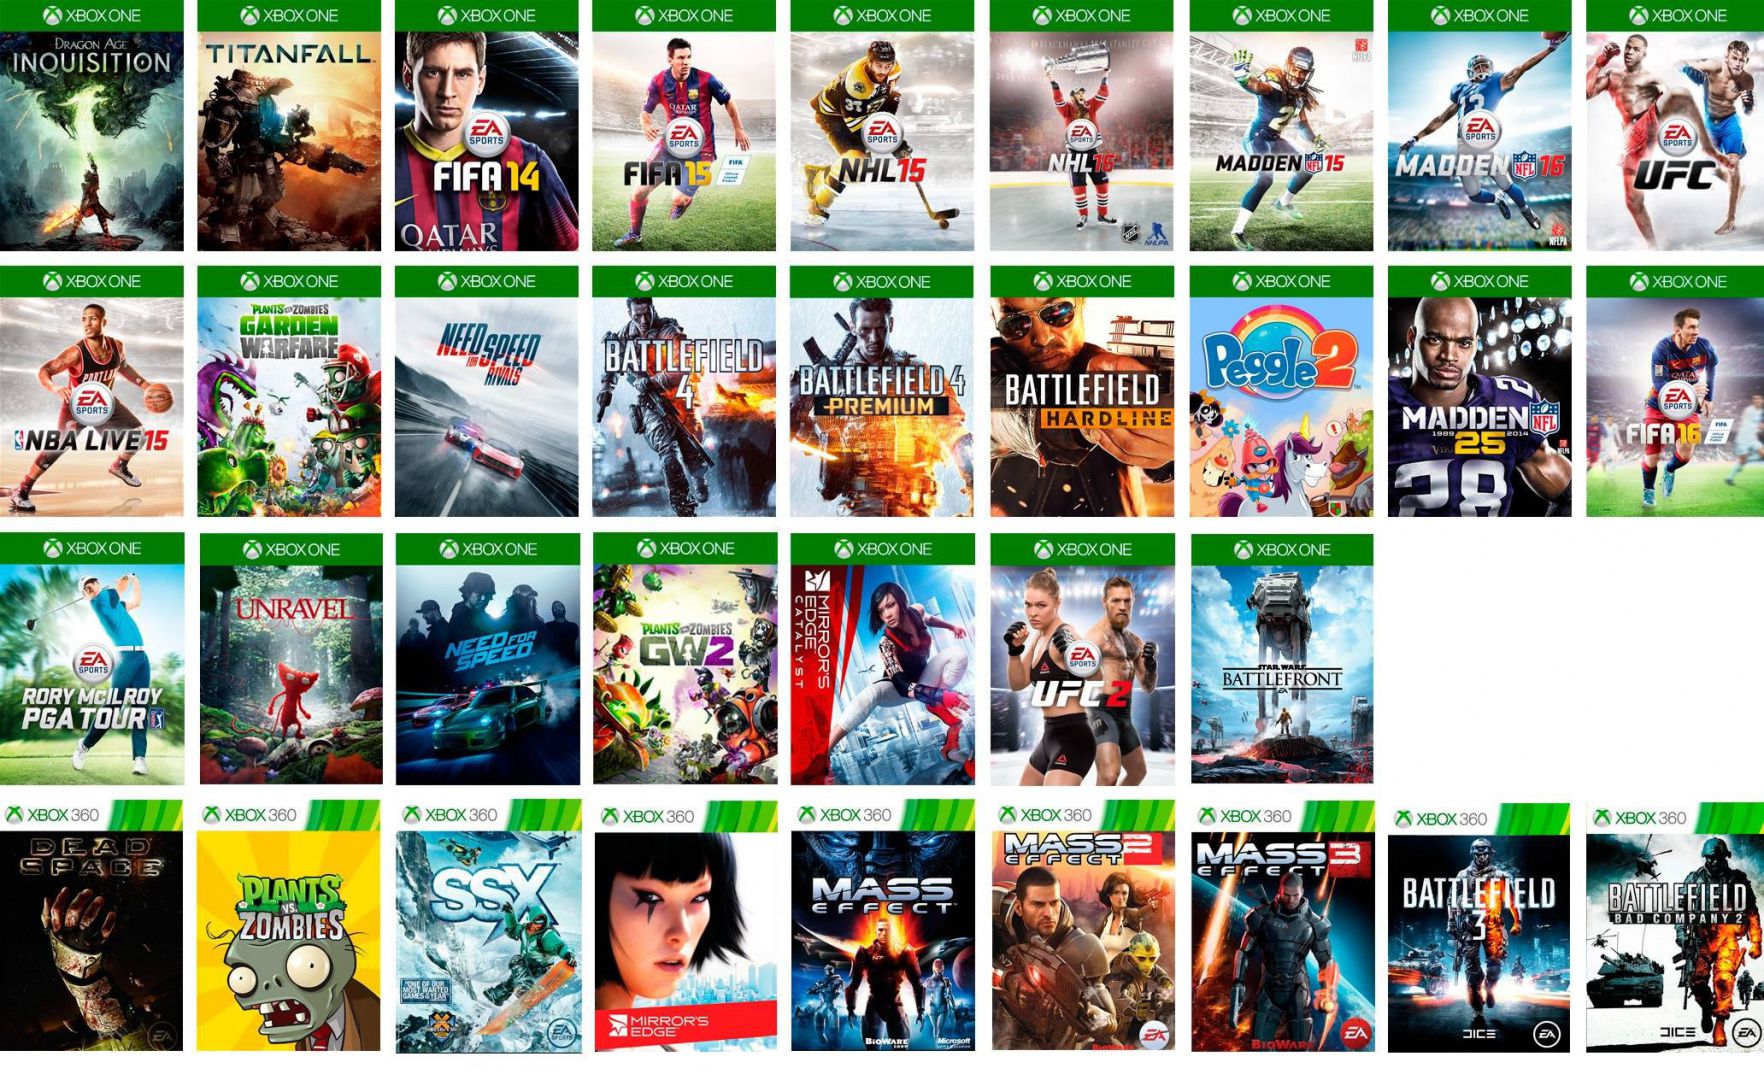 ¿Qué ofrece Xbox One por solo 11 euros al mes? - Por 11 euros al mes puedes estar nutrido de juegos todo un año y más. ¿Quieres saber como?